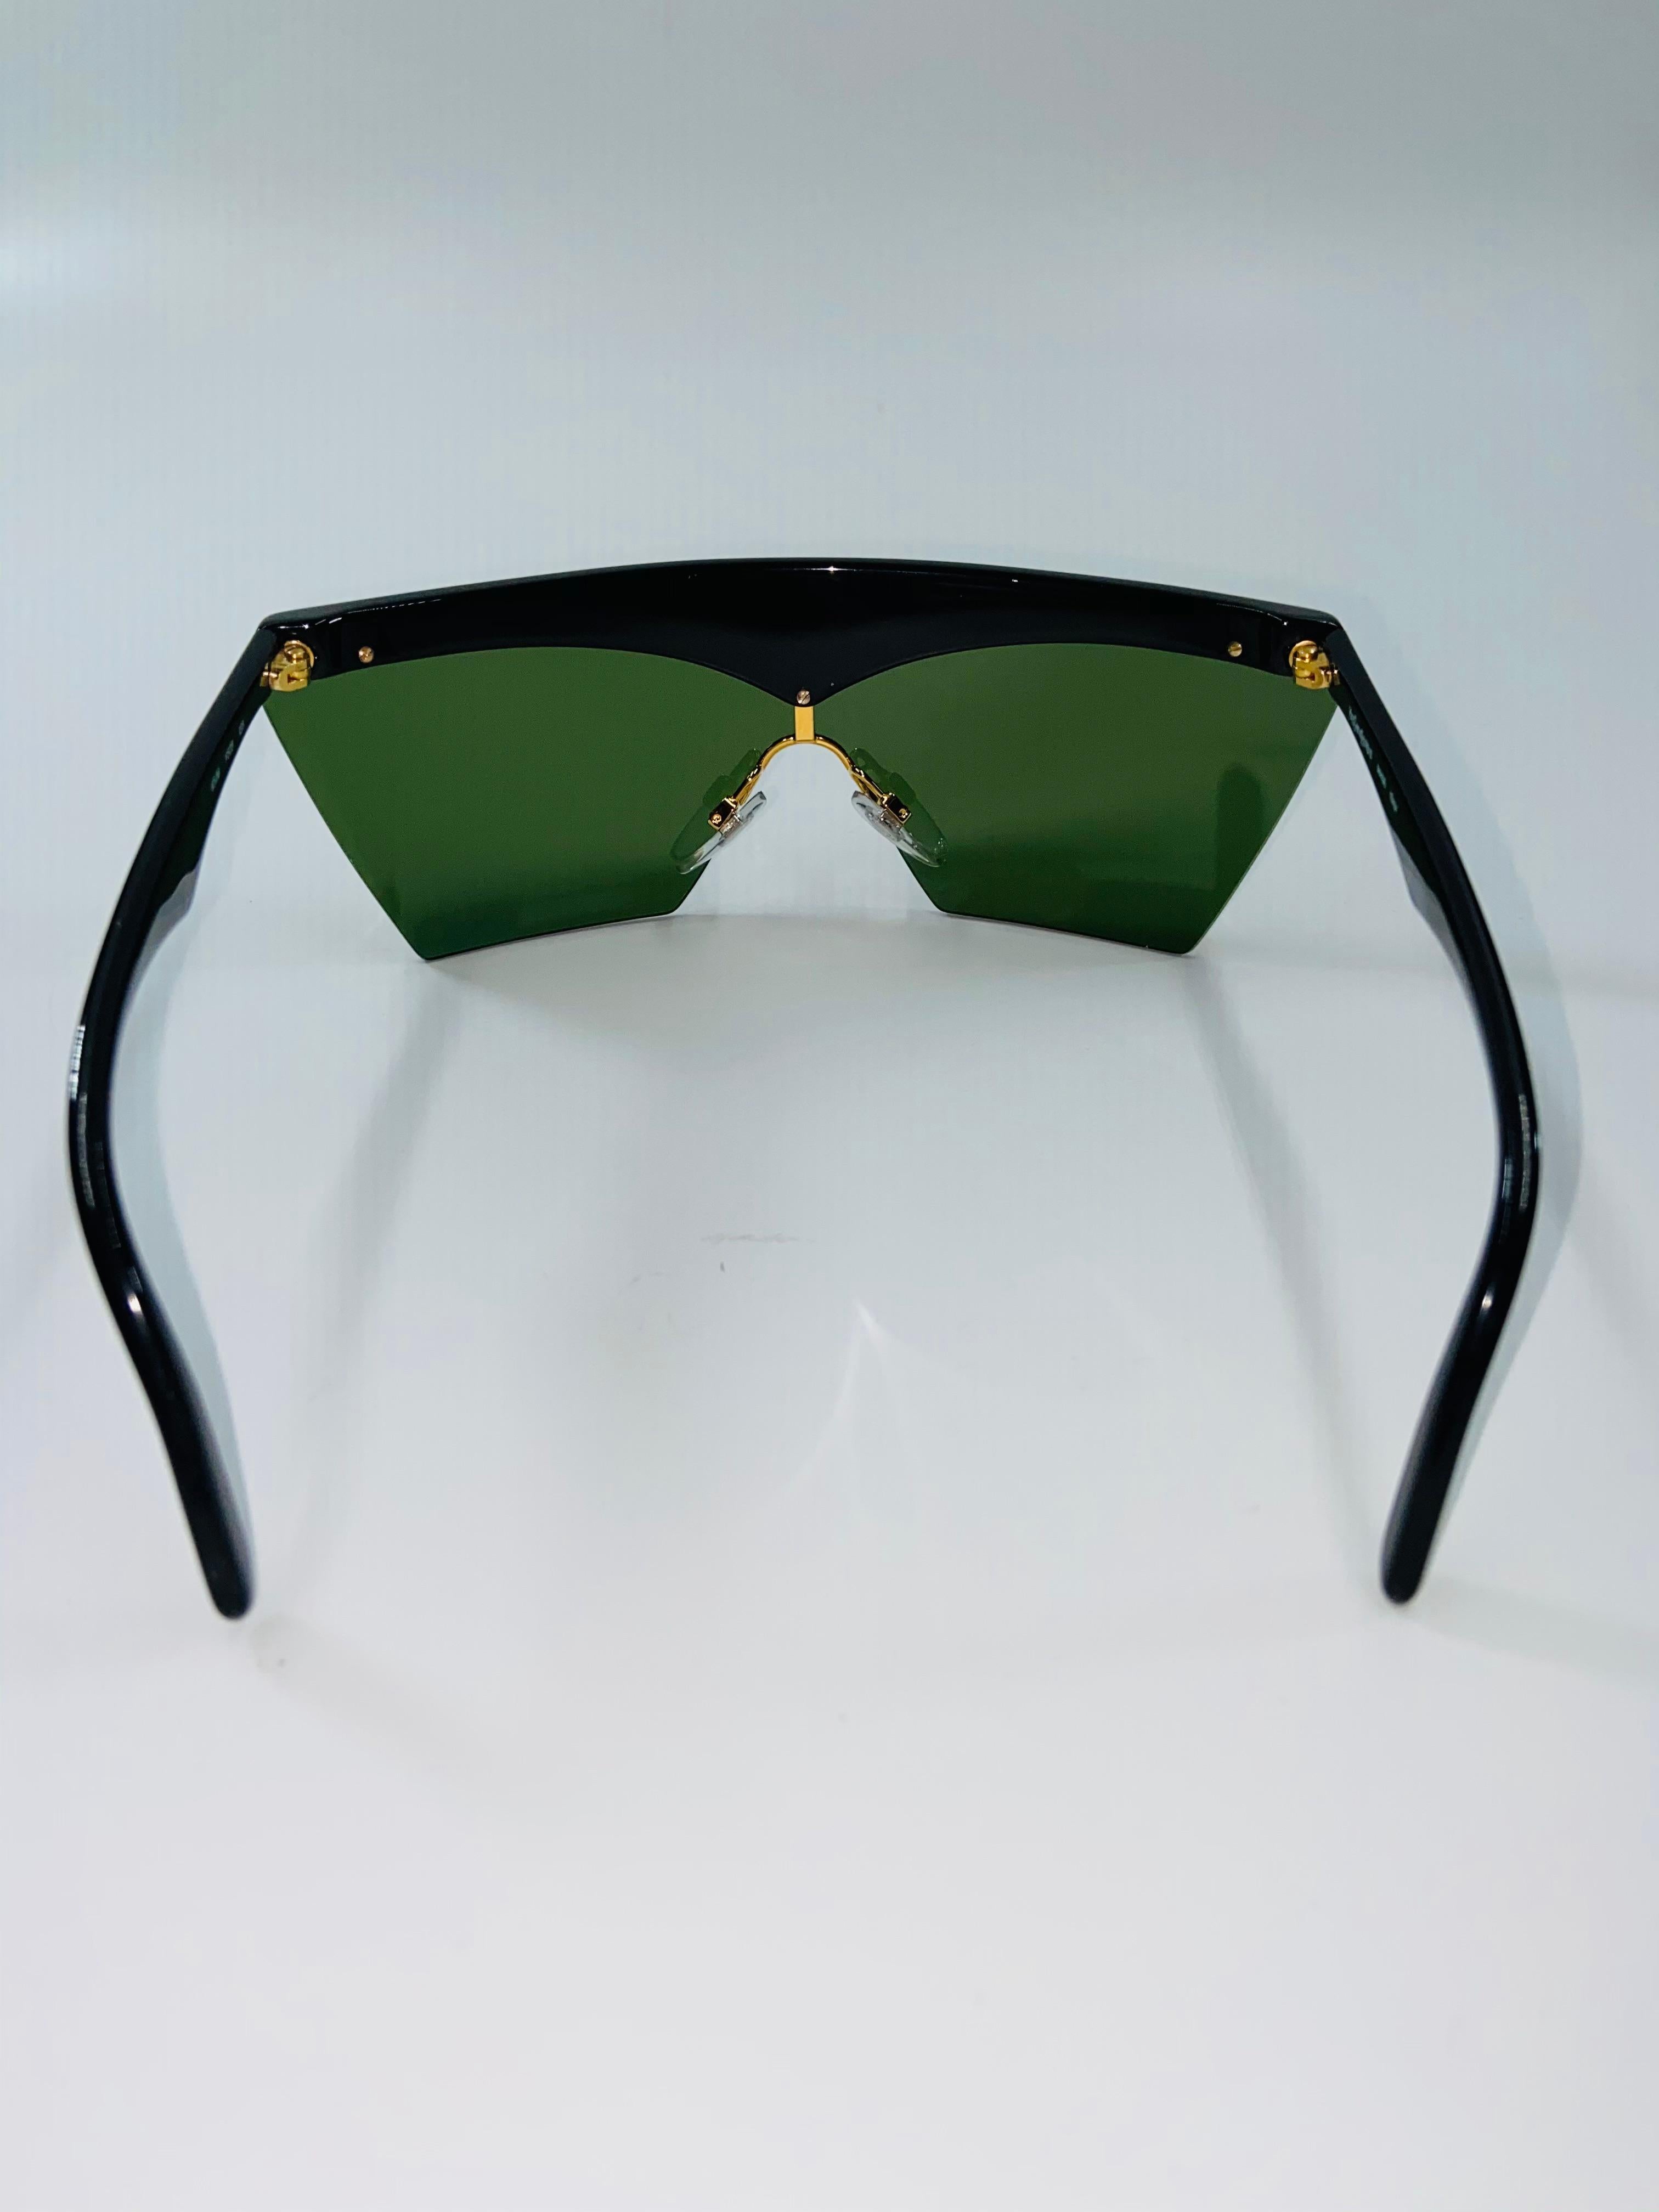 Yves Saint Laurent 1980's Rare Black & Gold Dead Stock Sunglasses For Sale 2